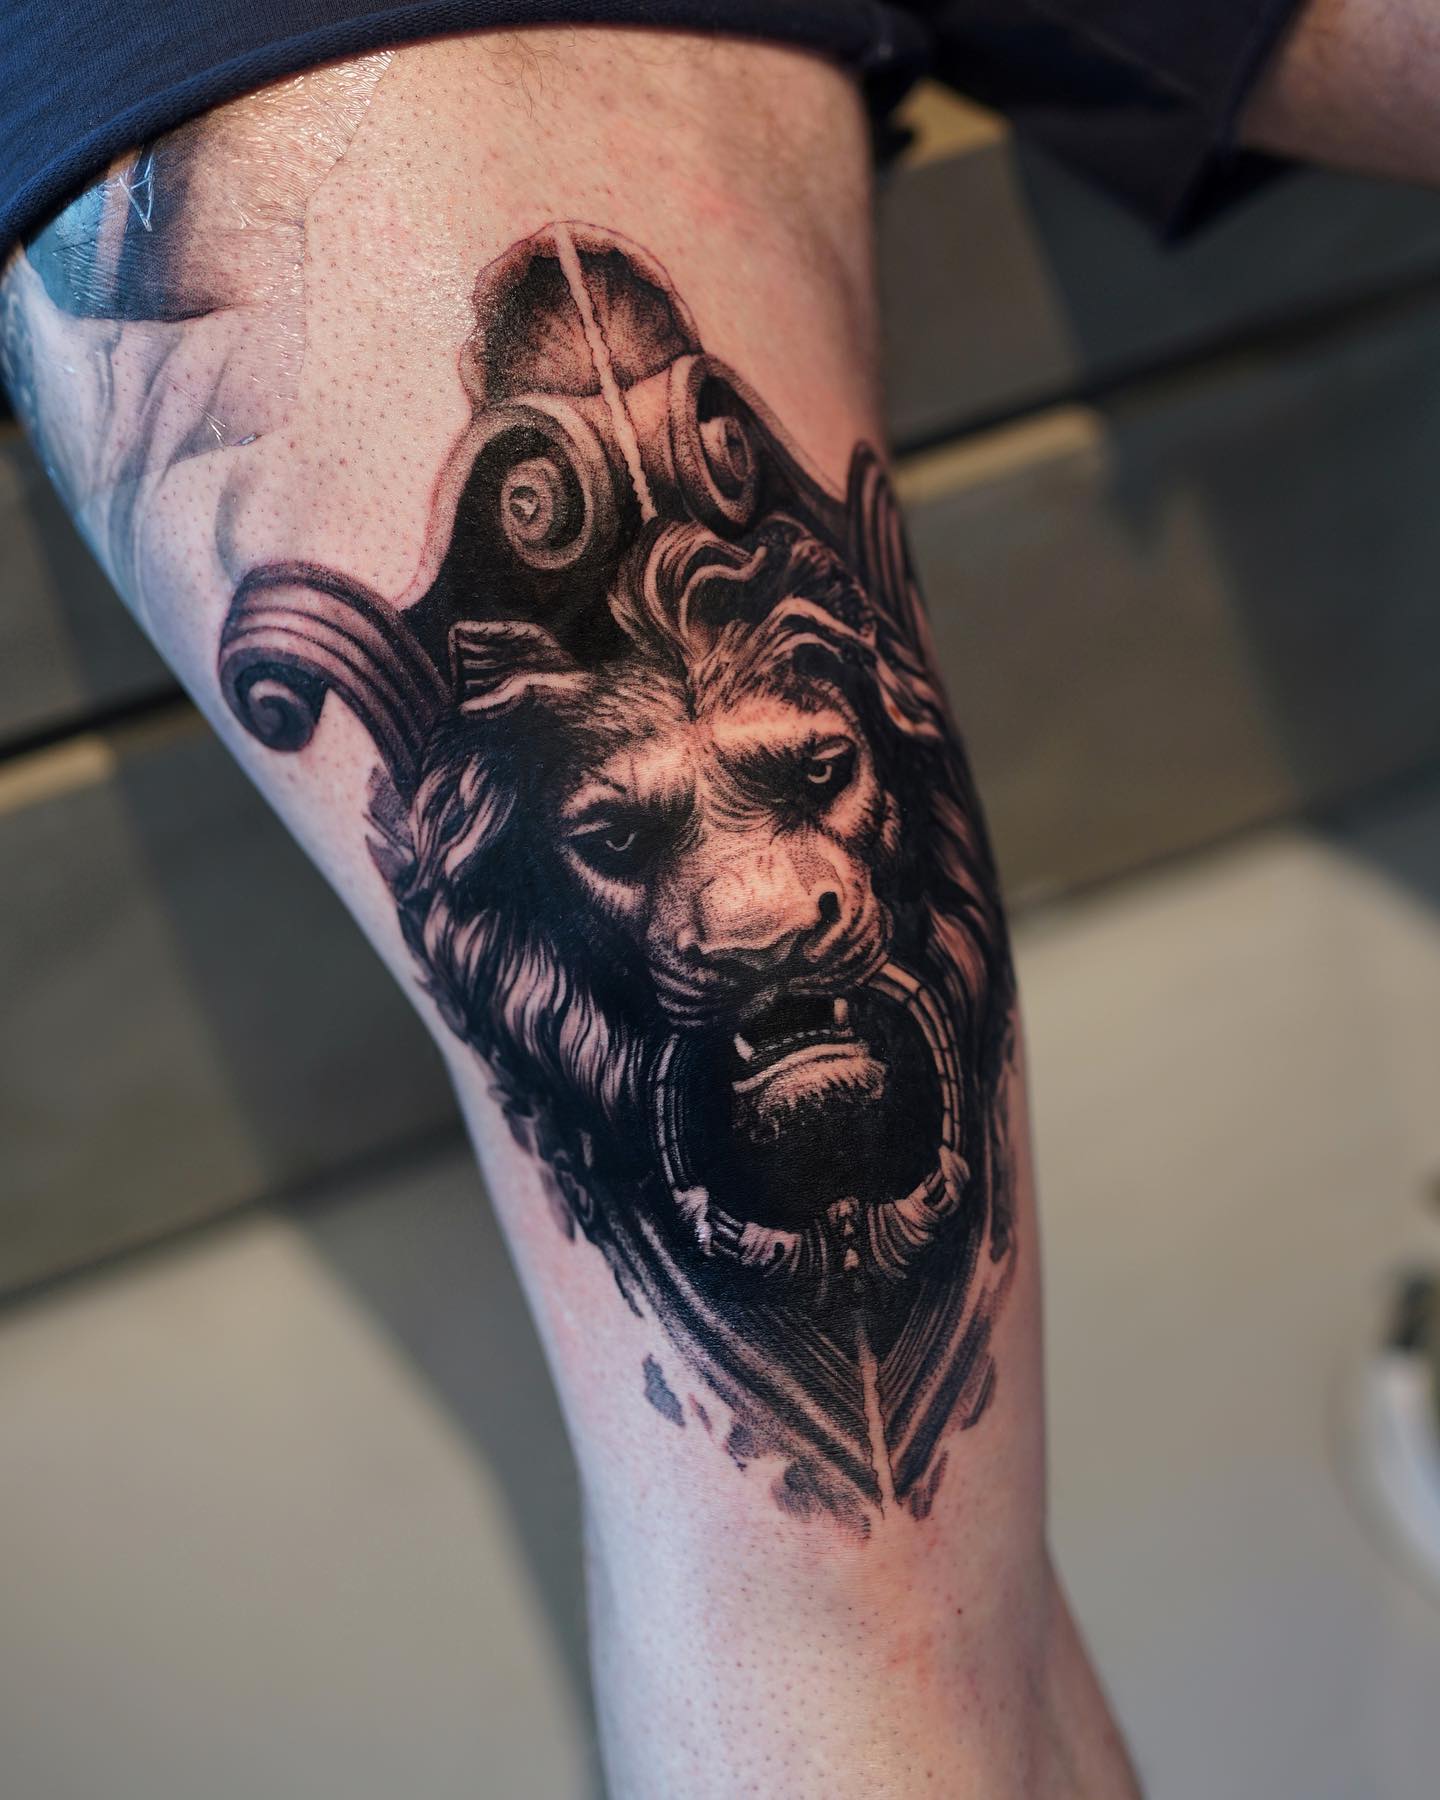 Tatuaje de animal por encima de la rodilla.